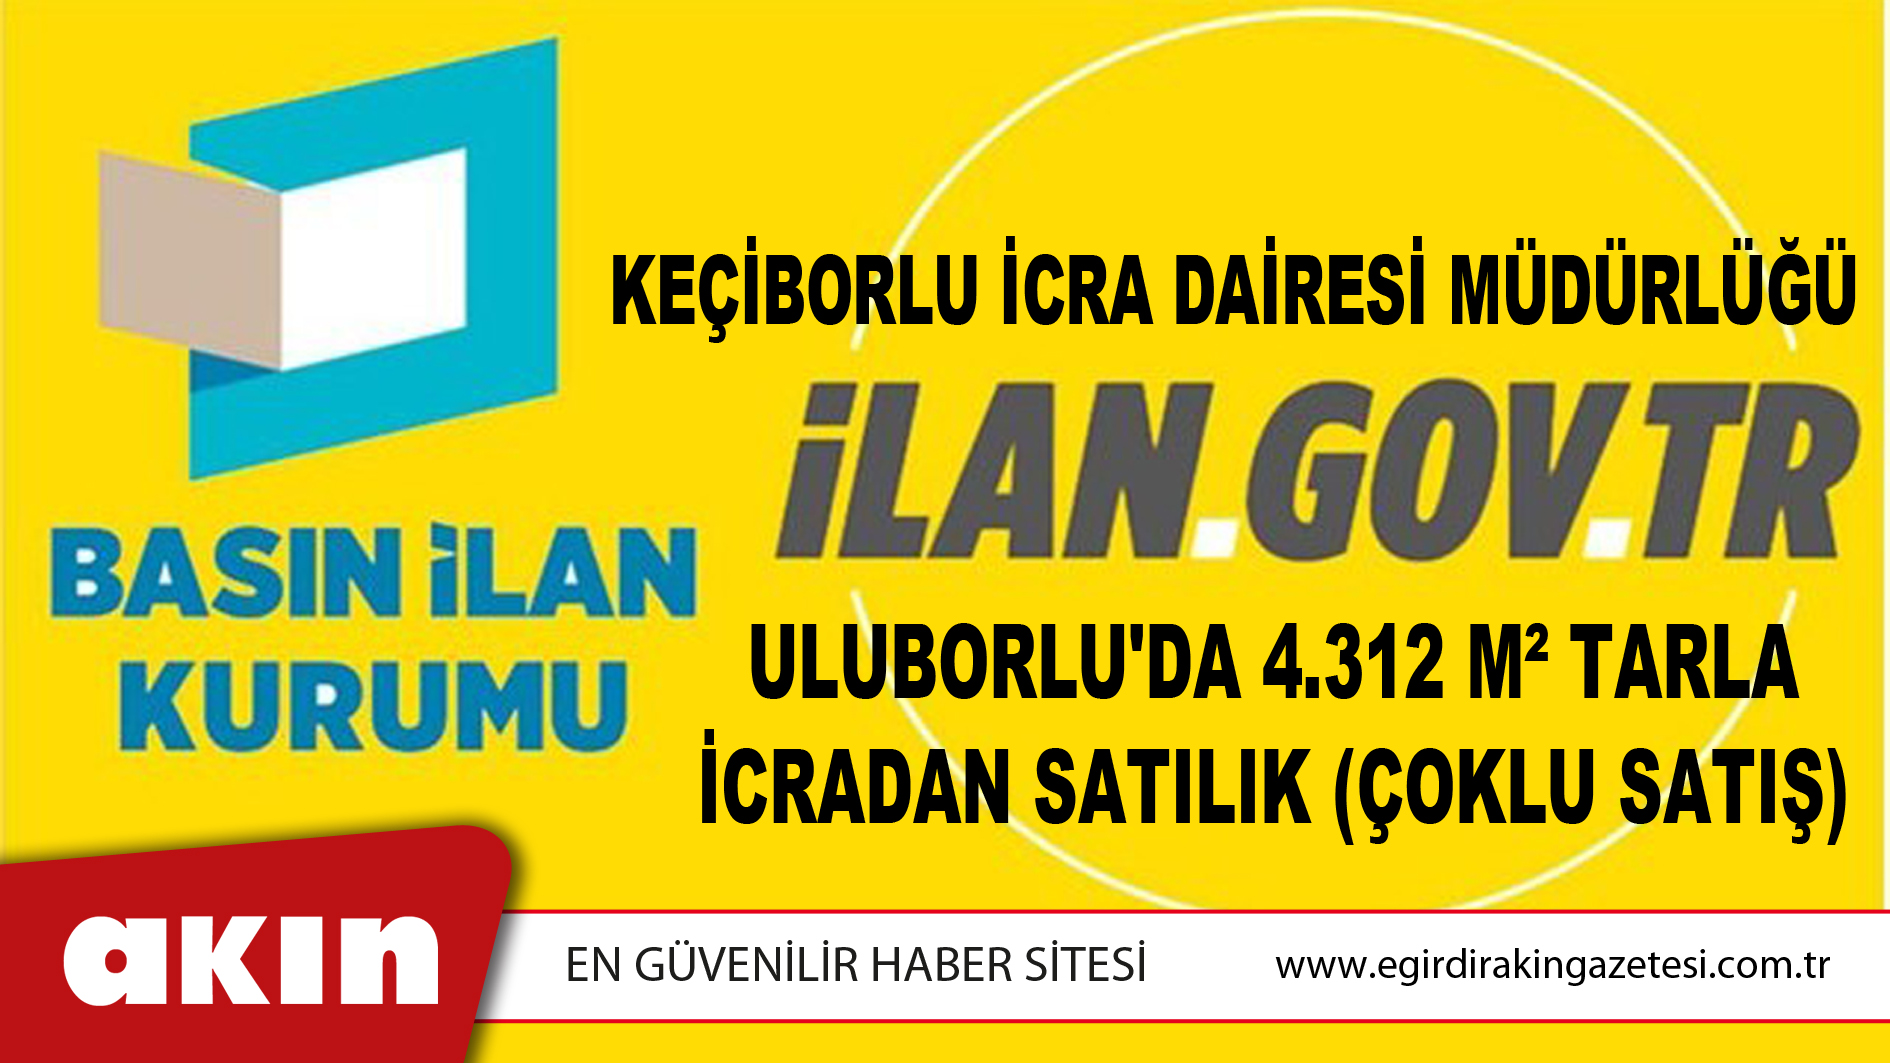 Keçiborlu İcra Dairesi Müdürlüğü Uluborlu'da 4.312 M² Tarla İcradan Satılık (Çoklu Satış)